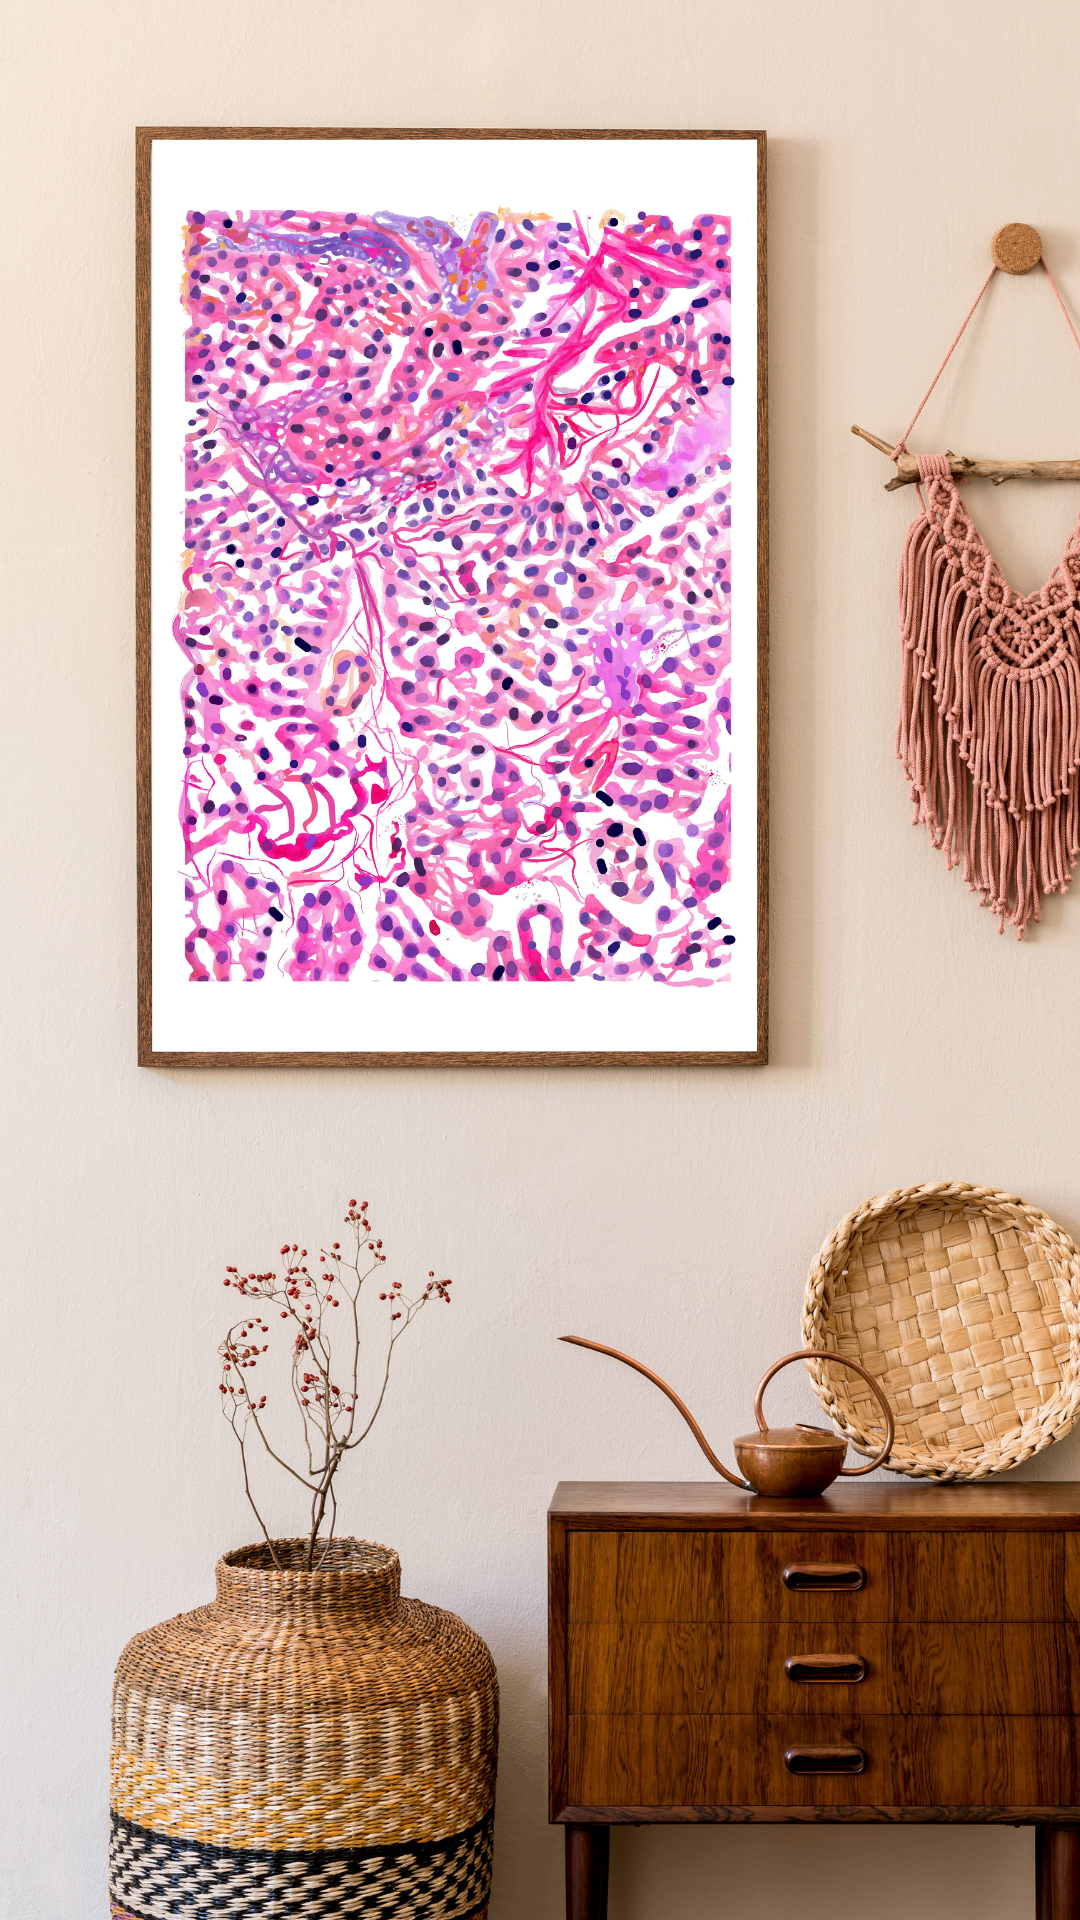 pancreas histology art